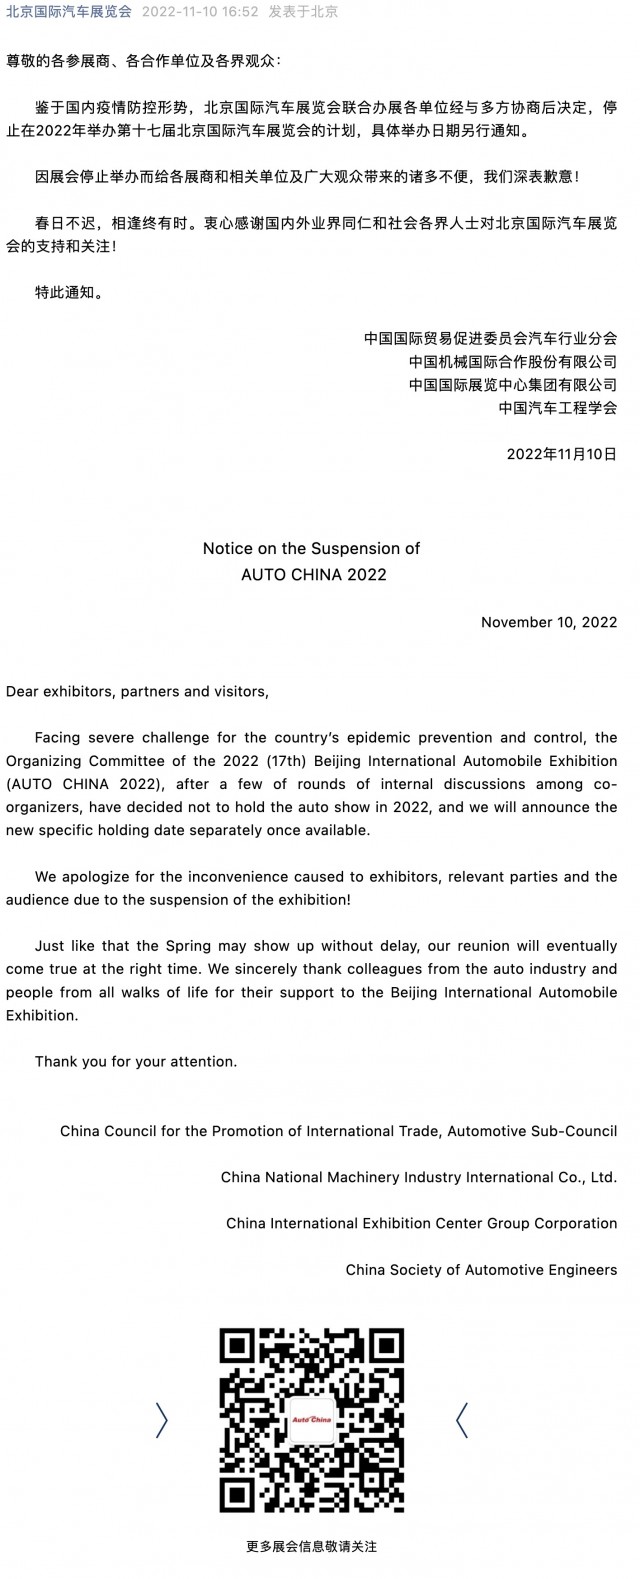 2022北京国际汽车展览会（AUTO CHINA 2022）停止举办通知